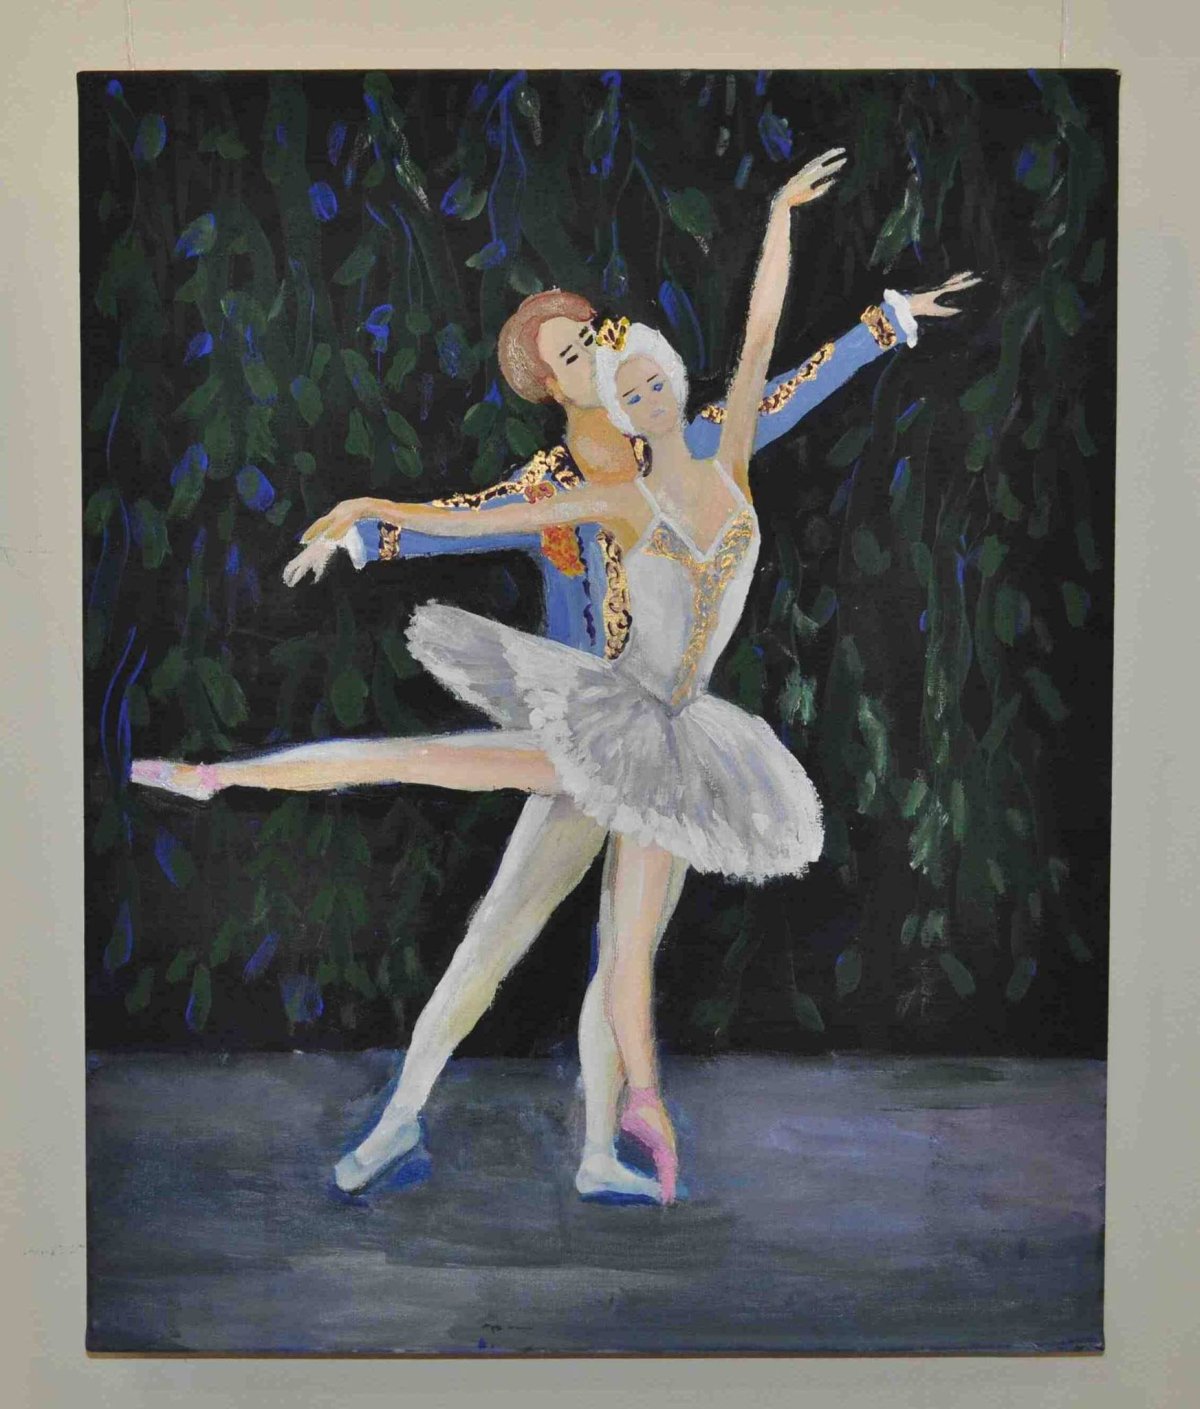 Иллюстрация к балету Лебединое озеро